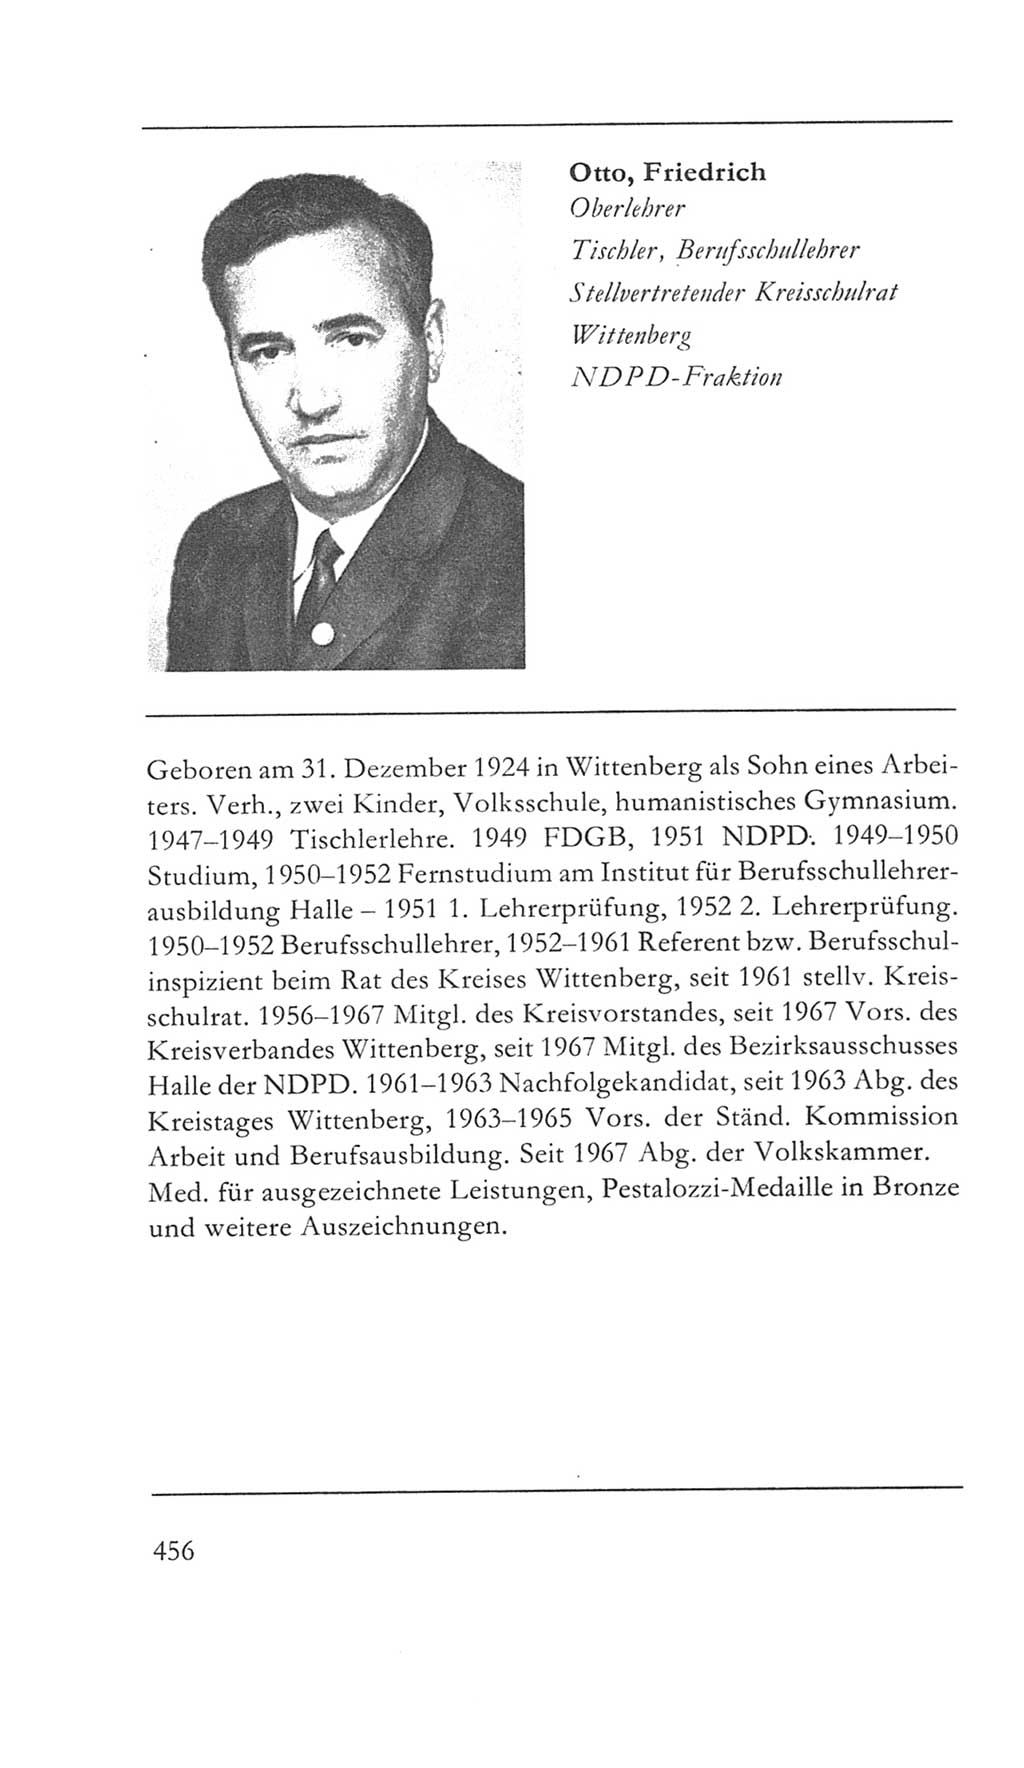 Volkskammer (VK) der Deutschen Demokratischen Republik (DDR) 5. Wahlperiode 1967-1971, Seite 456 (VK. DDR 5. WP. 1967-1971, S. 456)